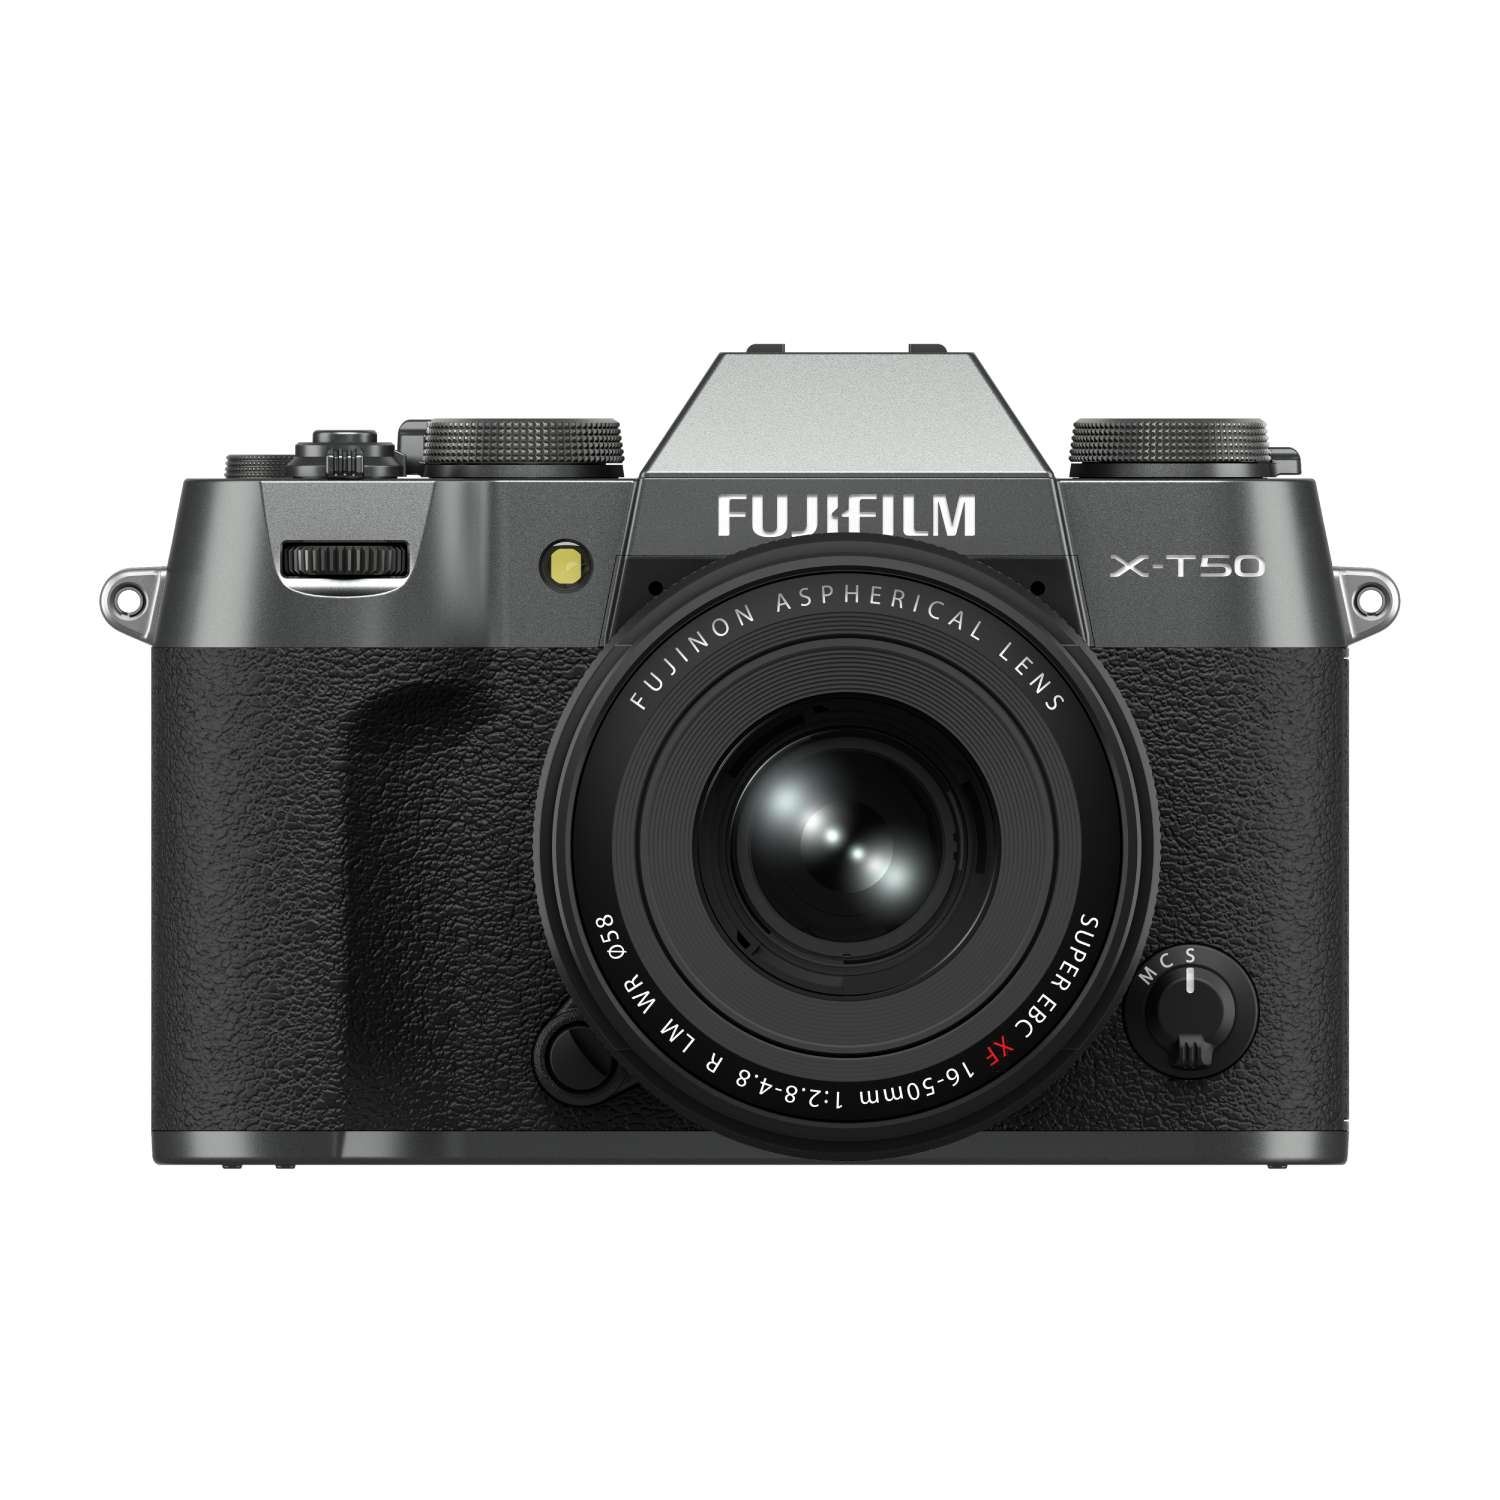 Fujifilm X-T50 Gehäuse anthrazit + XF 16-50mm 1:2,8-4,8 R LM WR